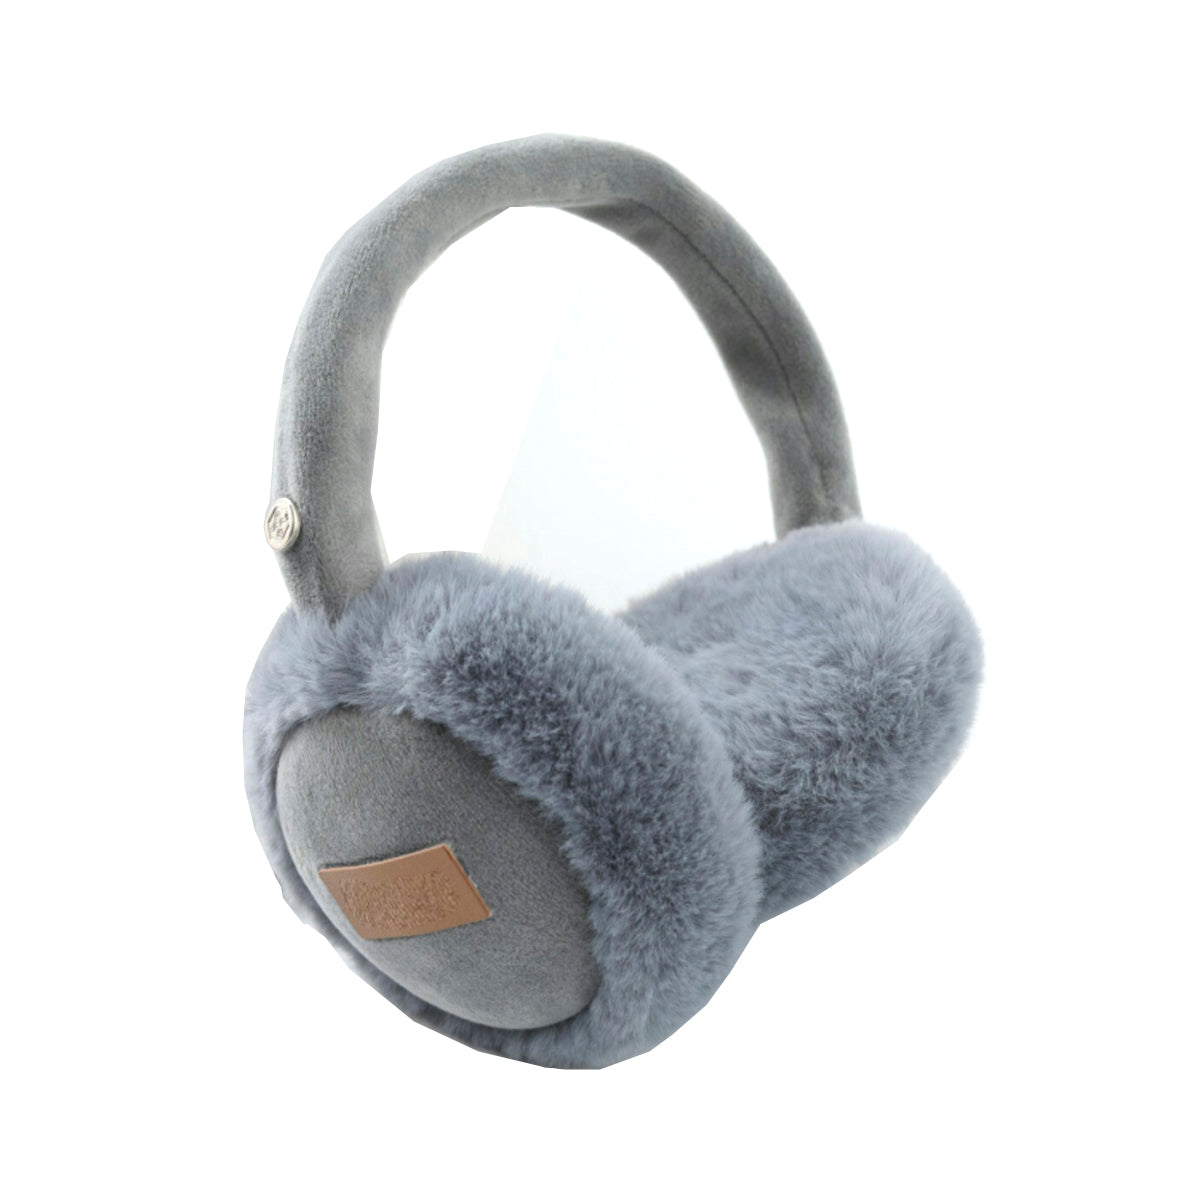 Fuzzy Wuzzy Bluetooth Headphones by VistaShops